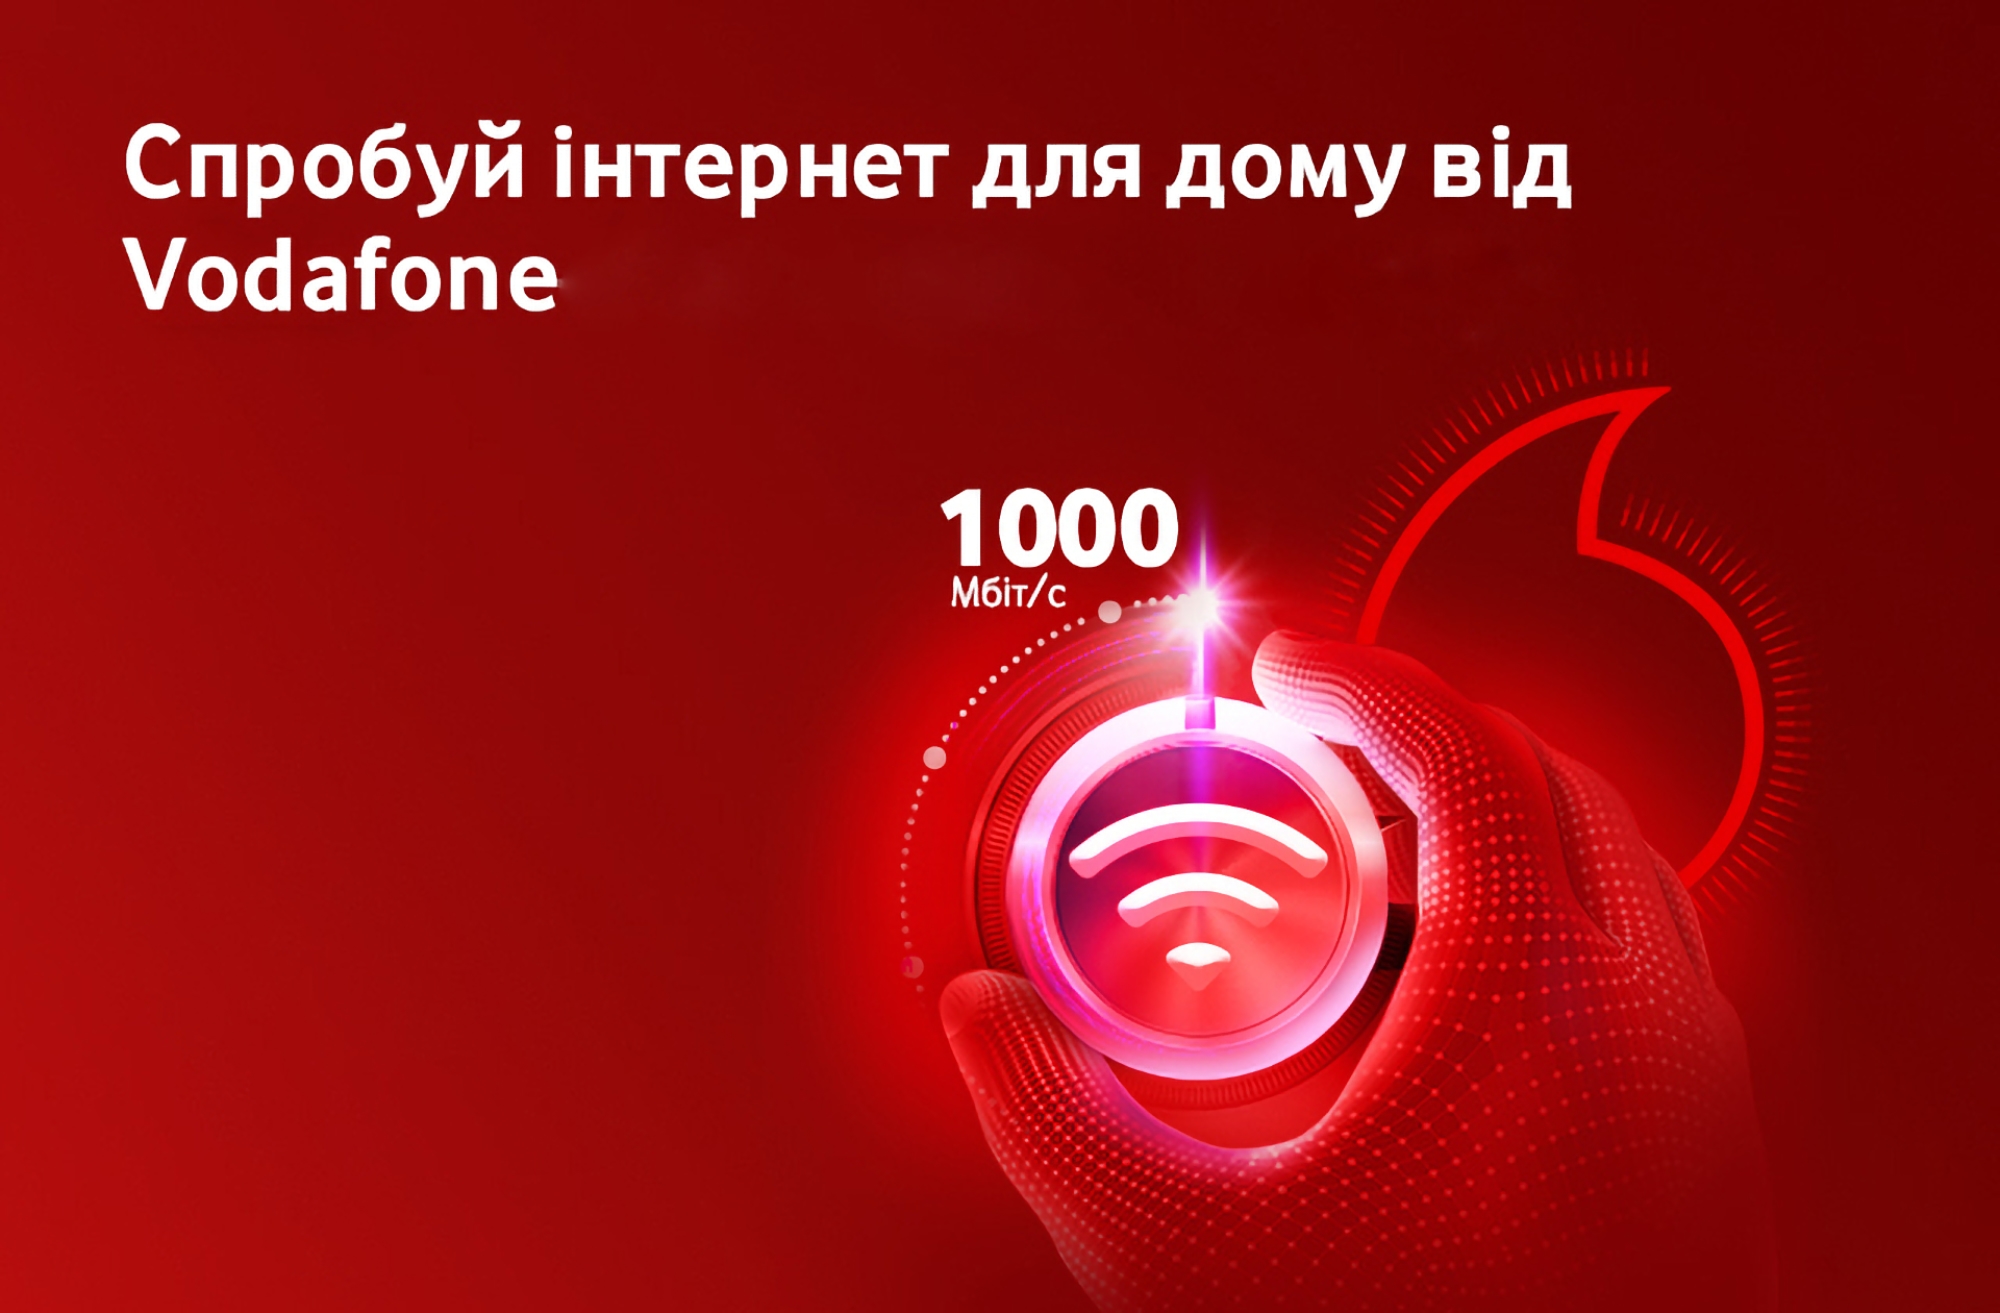 Vodafone укомплектовал операторское оборудование GPON альтернативными источниками питания и предлагает клиентам бесплатно протестировать интернет, который работает без света 72 часа